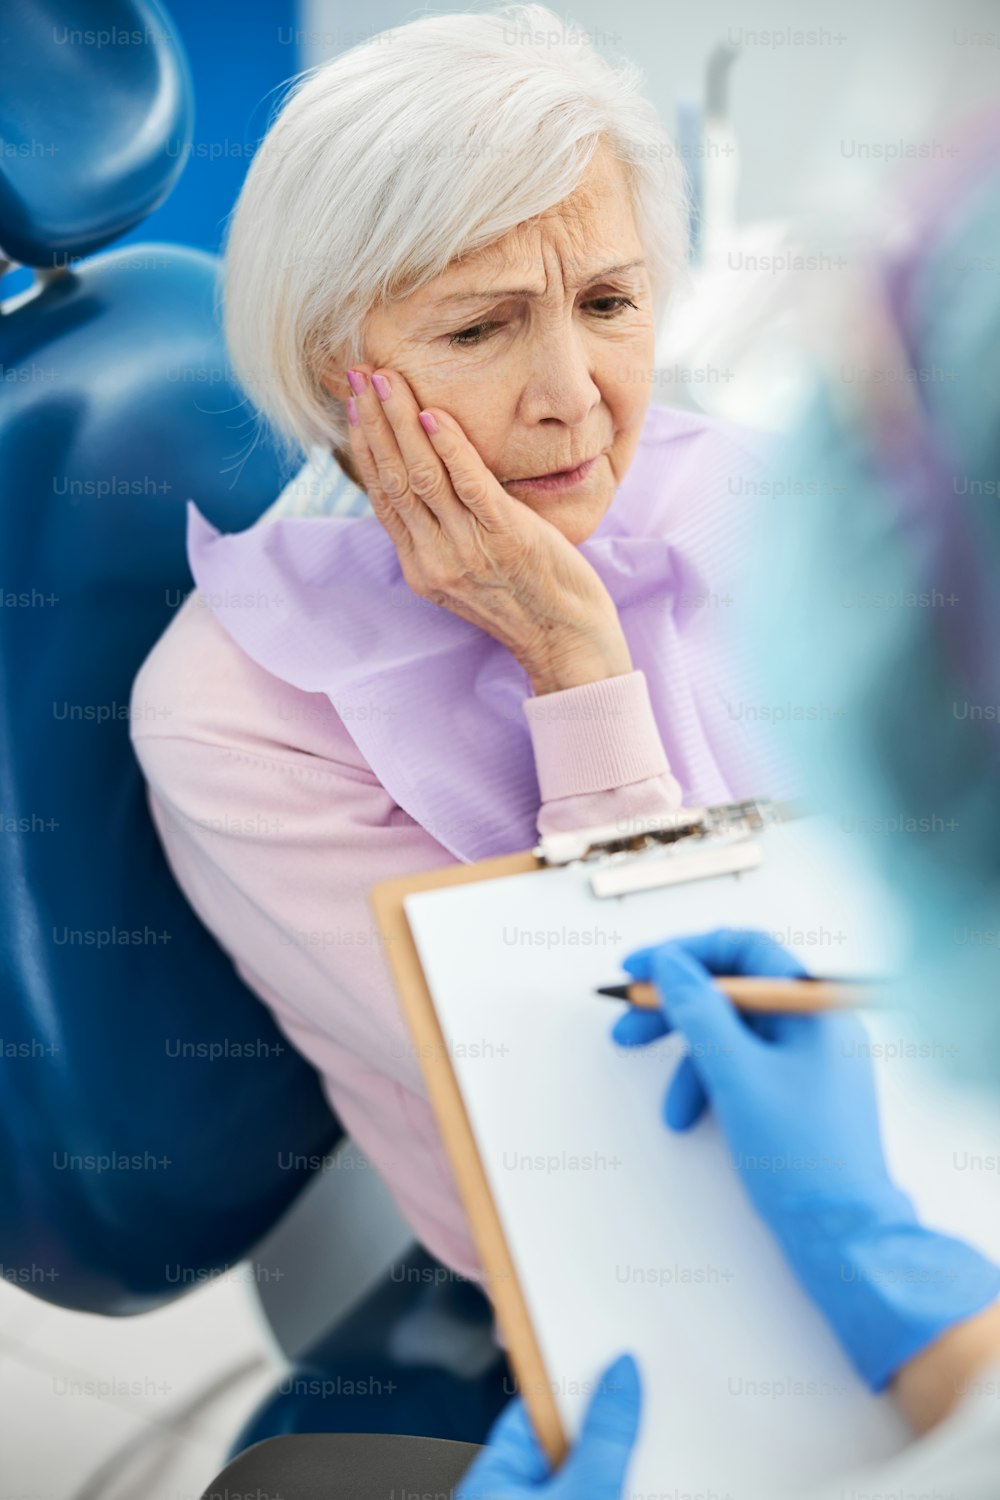 Señora anciana molesta presionando su palma contra la mejilla derecha mientras le cuenta sobre sus problemas dentales a una persona que toma notas